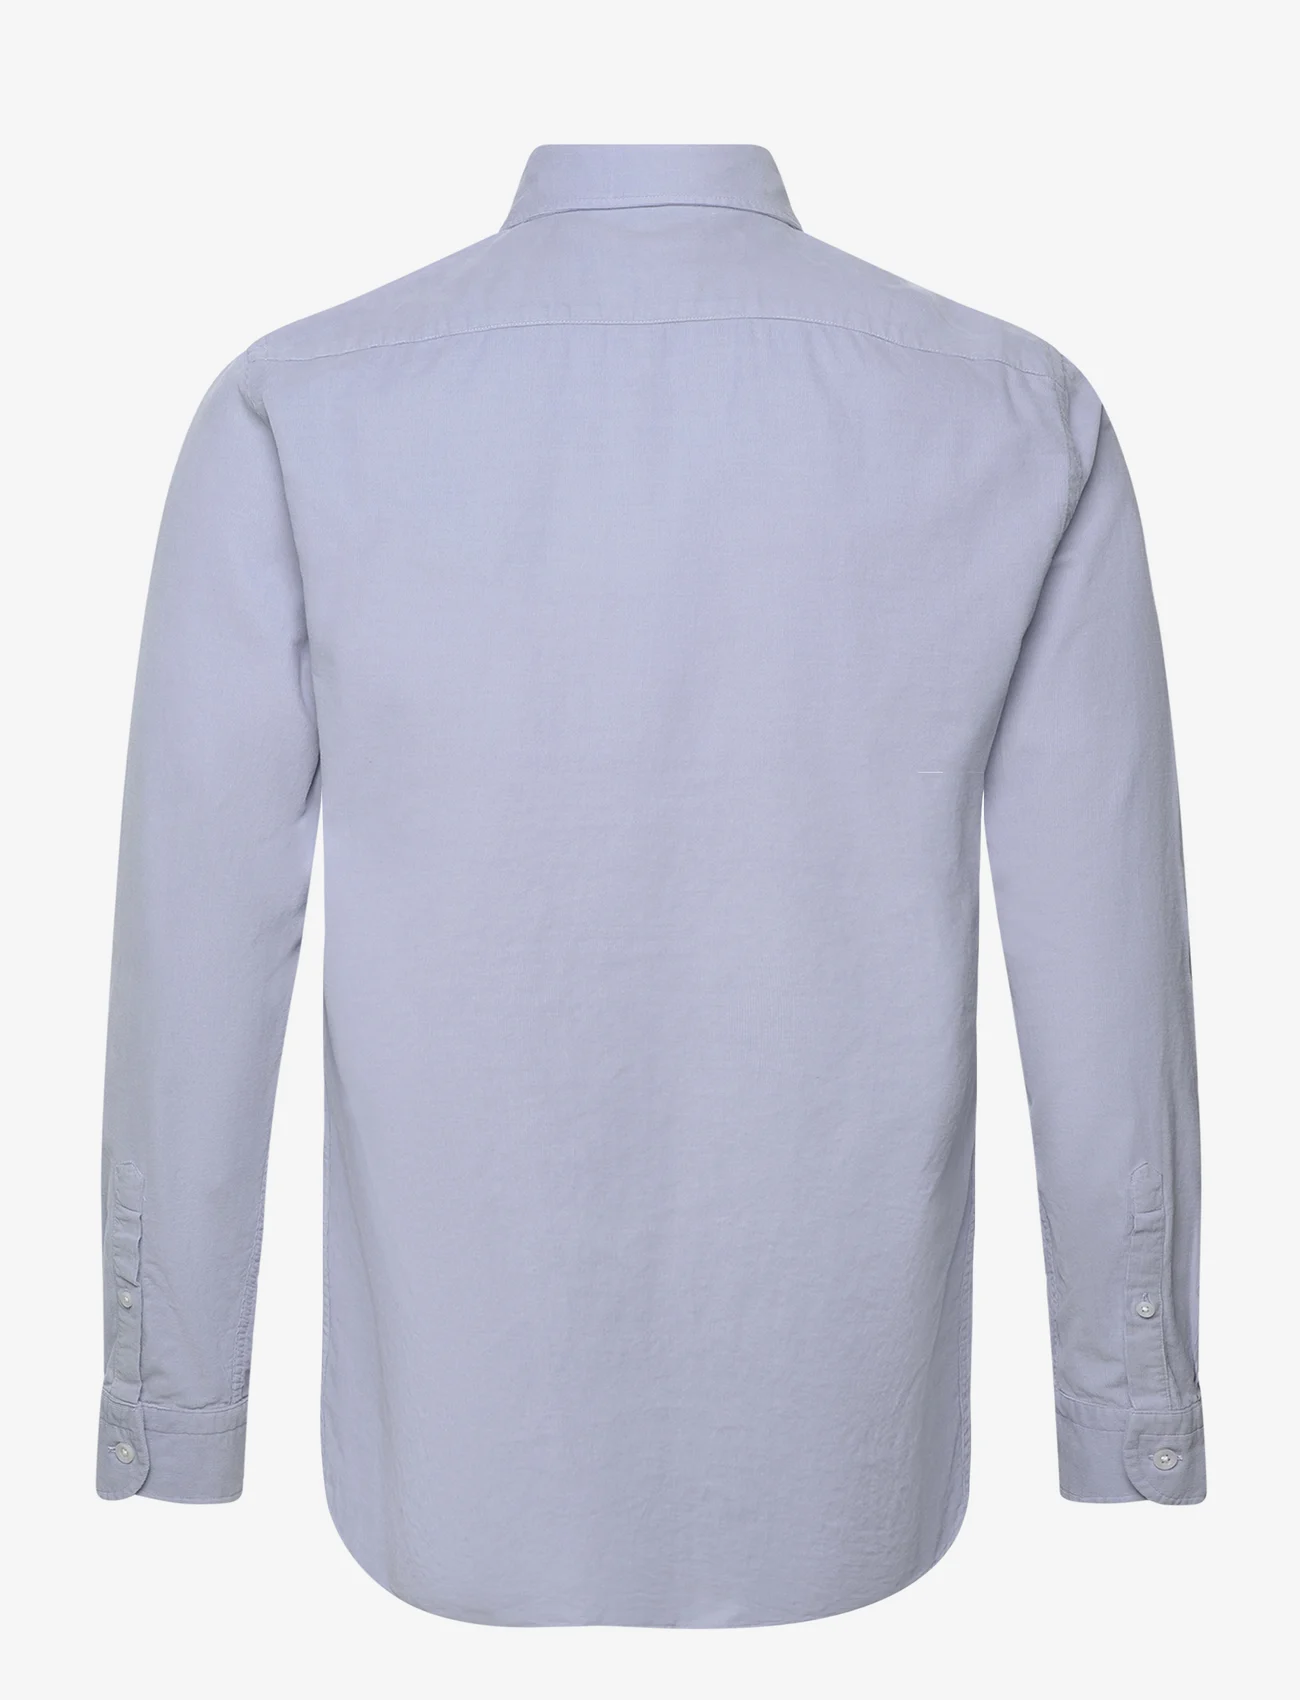 Reiss - VINCY - casual skjorter - soft blue - 1